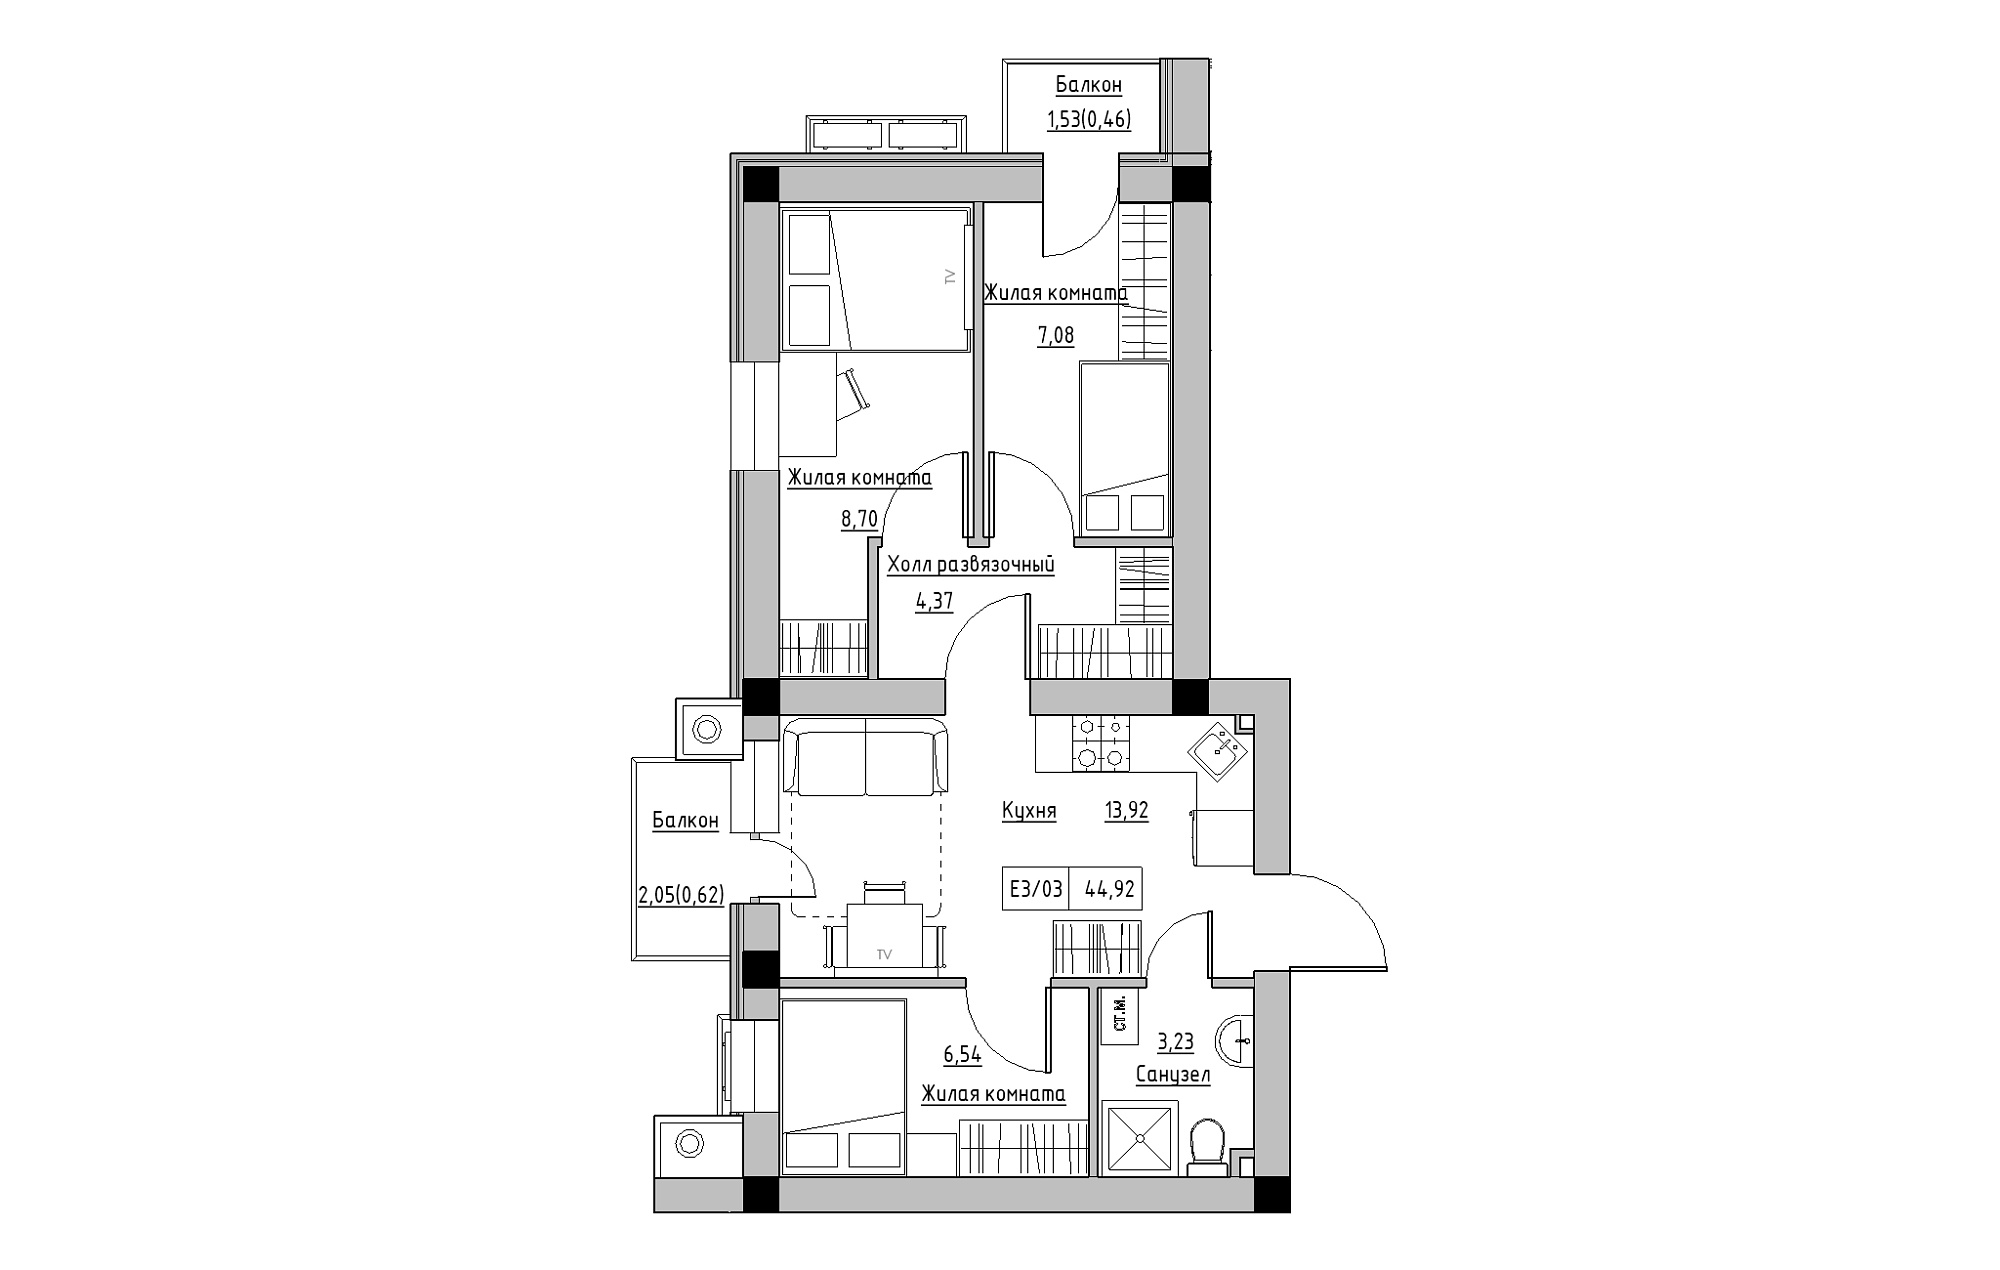 Планировка 3-к квартира площей 44.92м2, KS-013-05/0006.